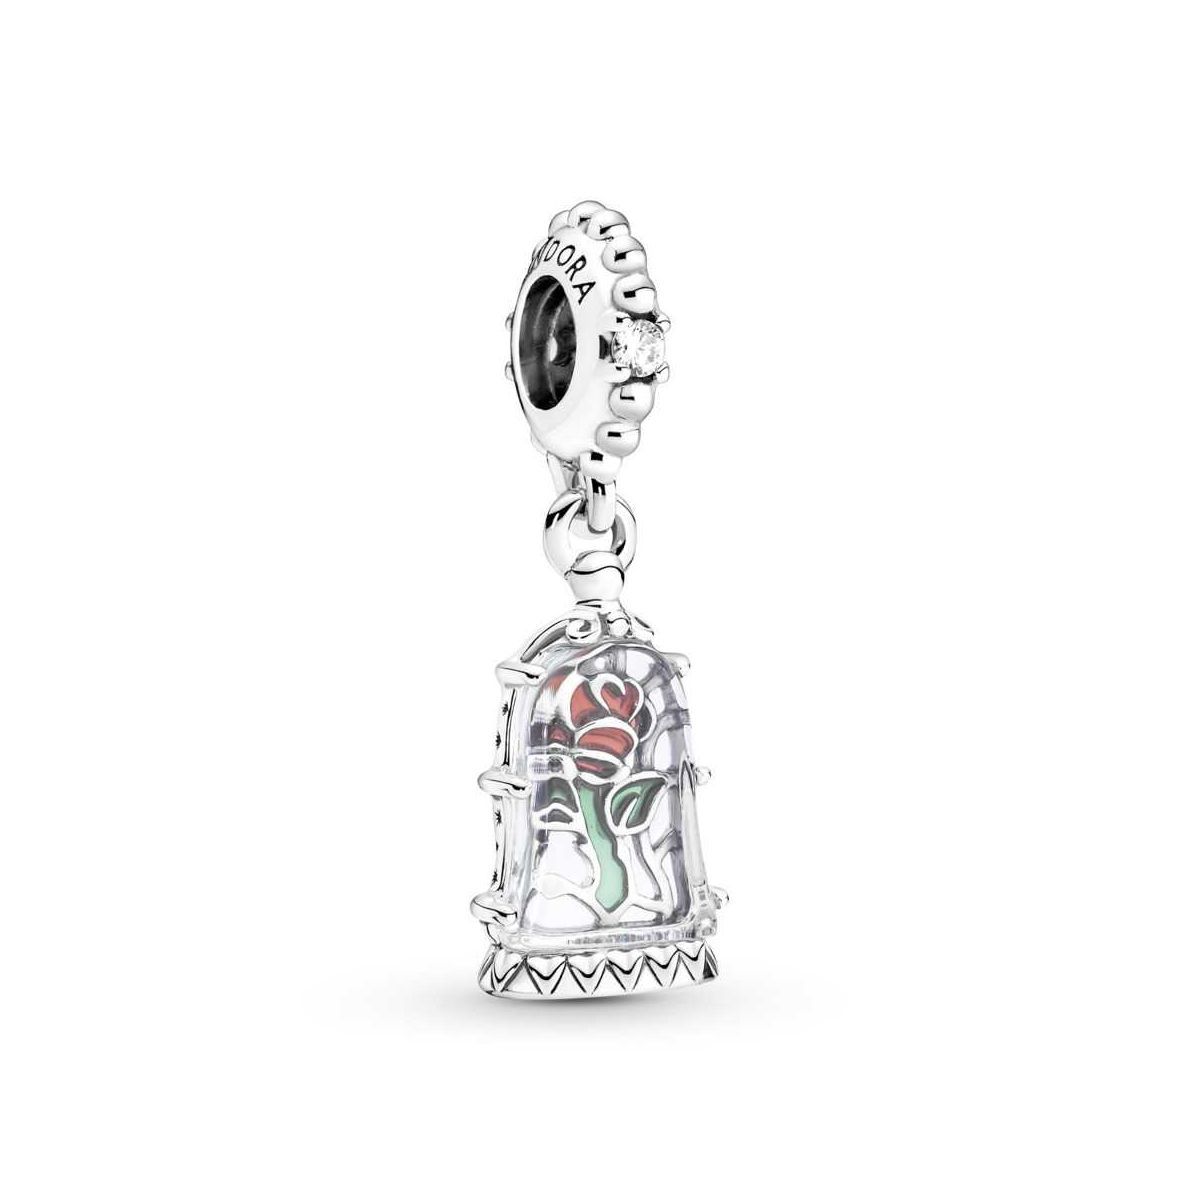 Charm Colgante  Rosa Encantada de La Bella y la Bestia de Disney - 790024C01